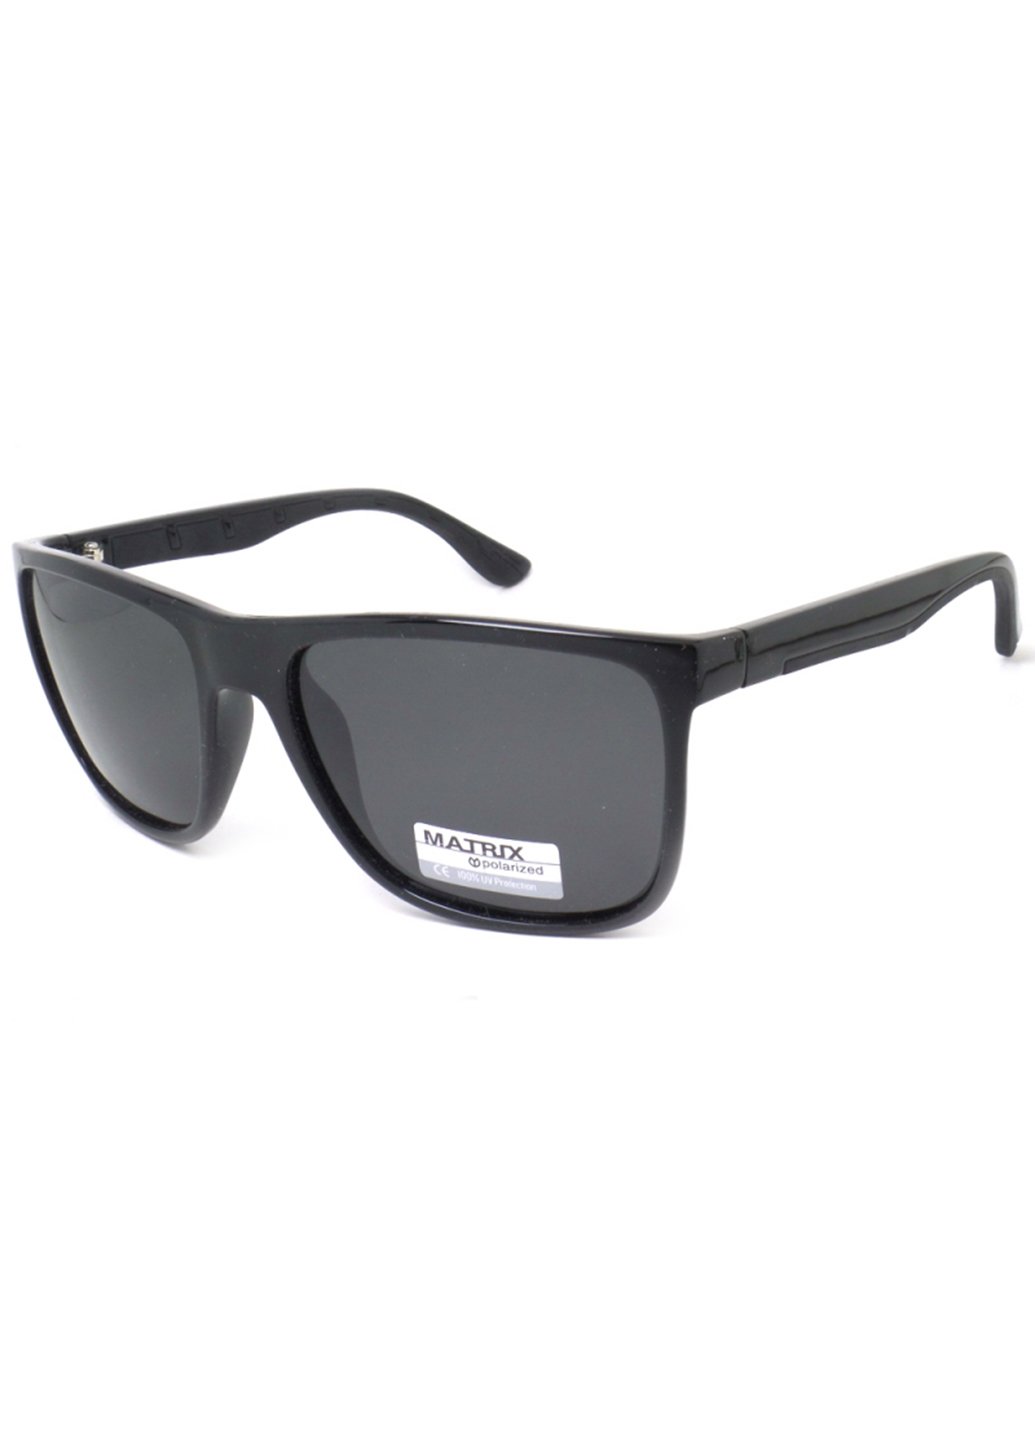 Купить Черные мужские солнцезащитные очки Matrix с поляризацией MT8571 111004 в интернет-магазине